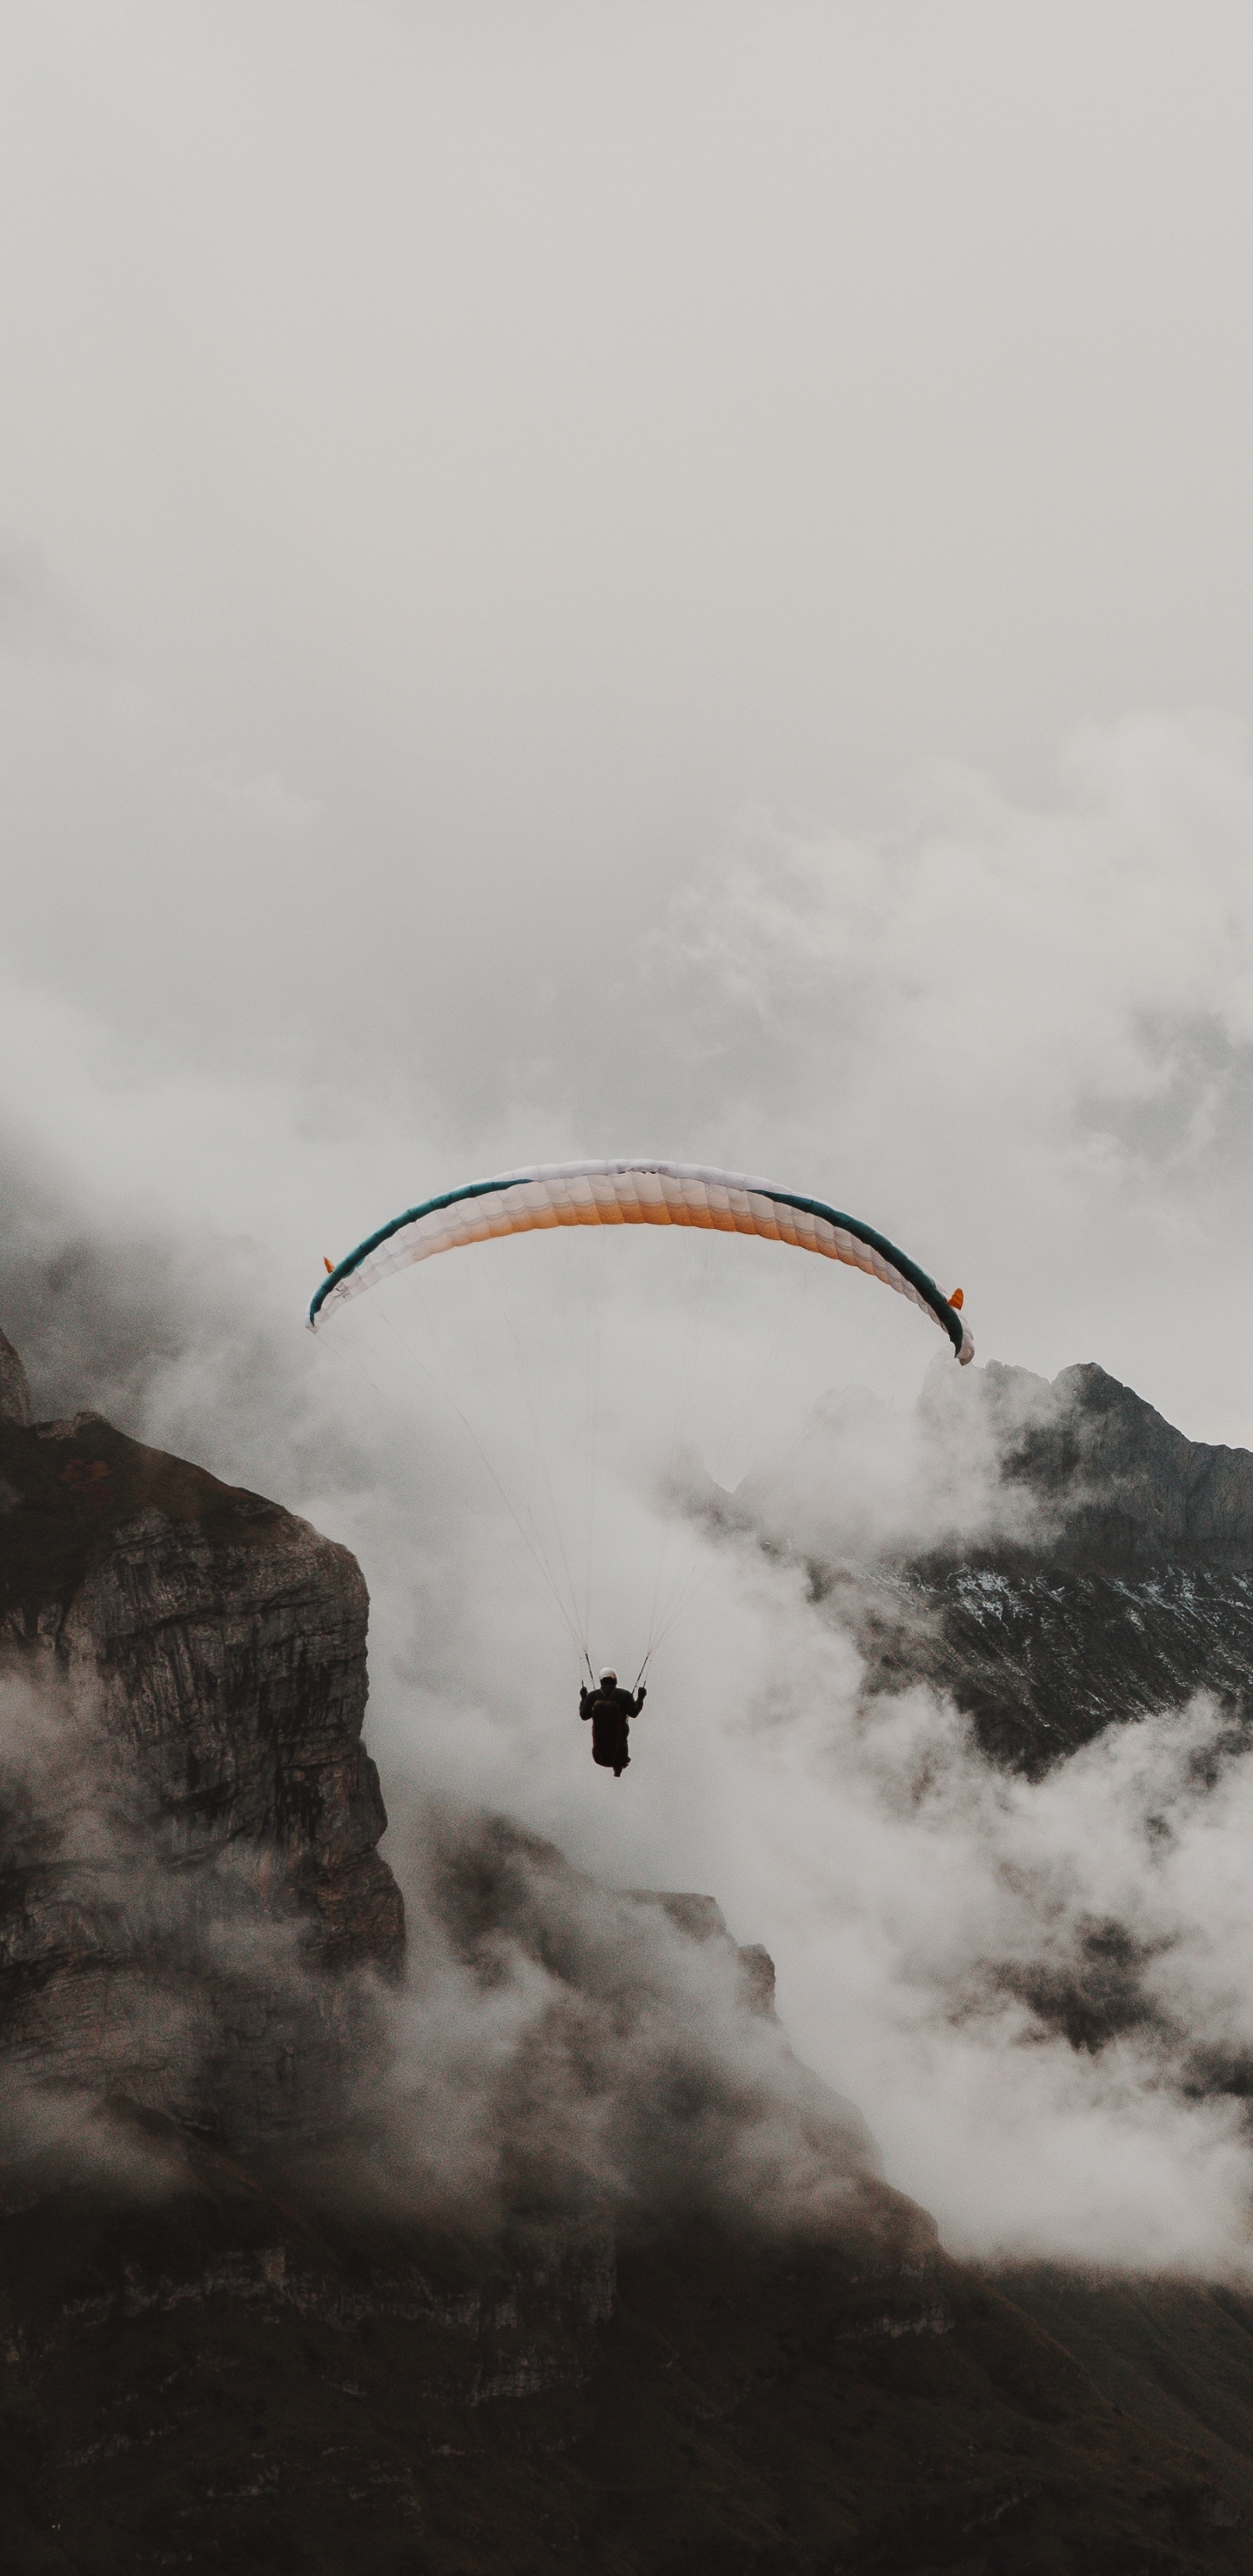 Personne Équitation Parachute Au-dessus de la Montagne Couverte de Neige. Wallpaper in 1440x2960 Resolution